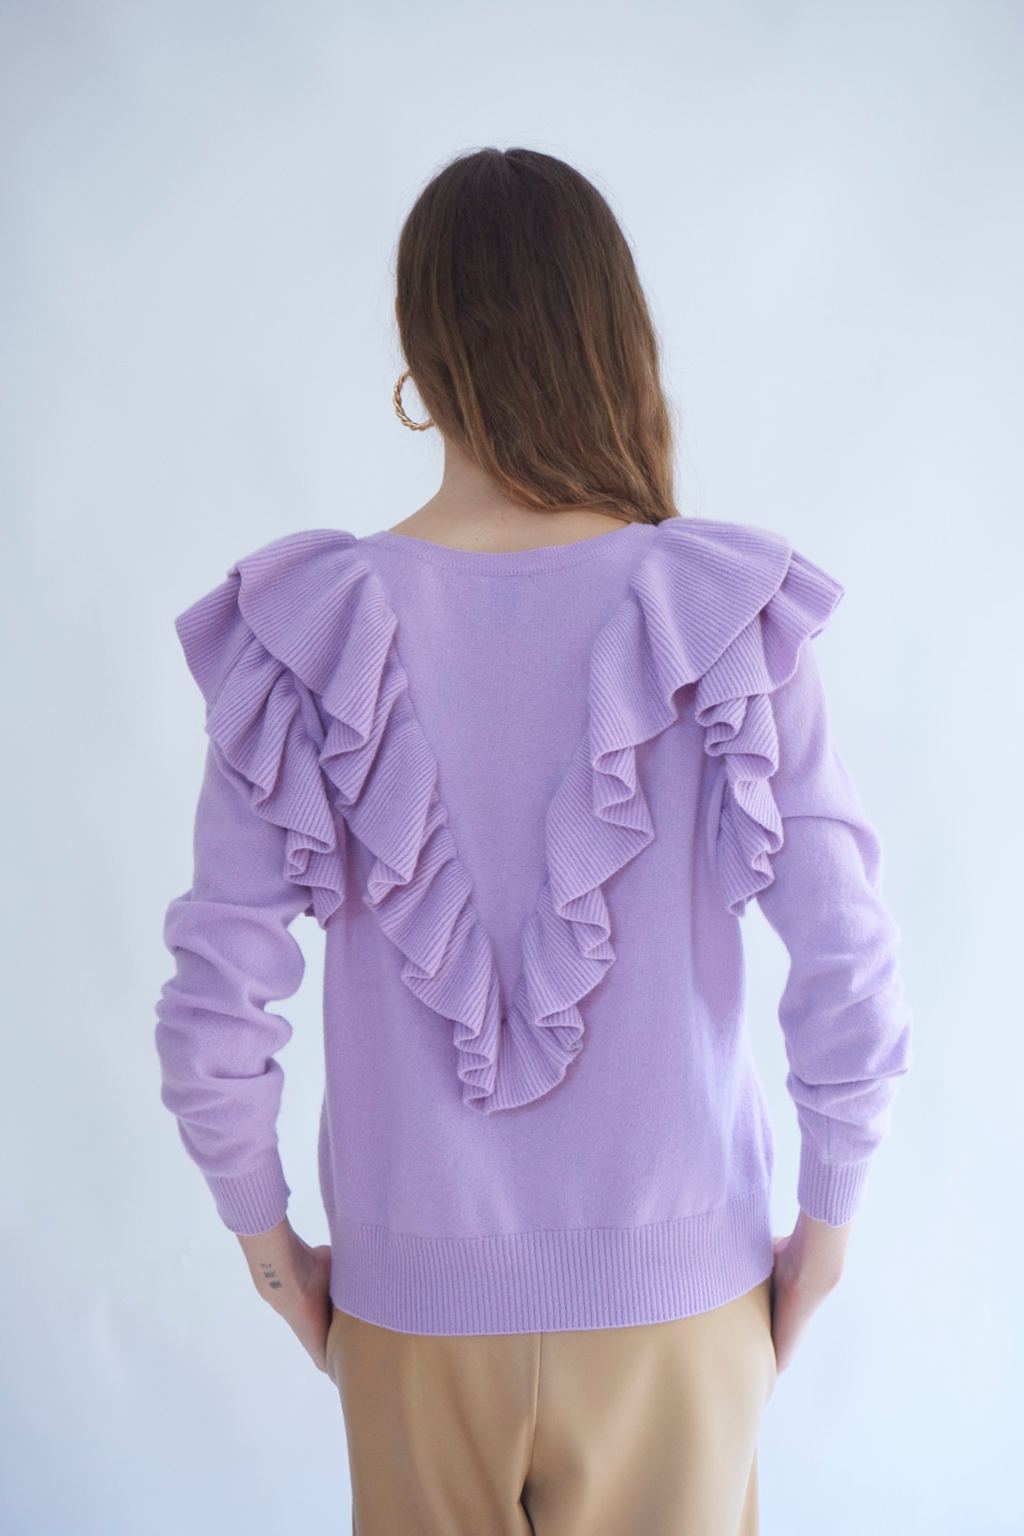 Seraphine Cashmere Sweater in Lavender